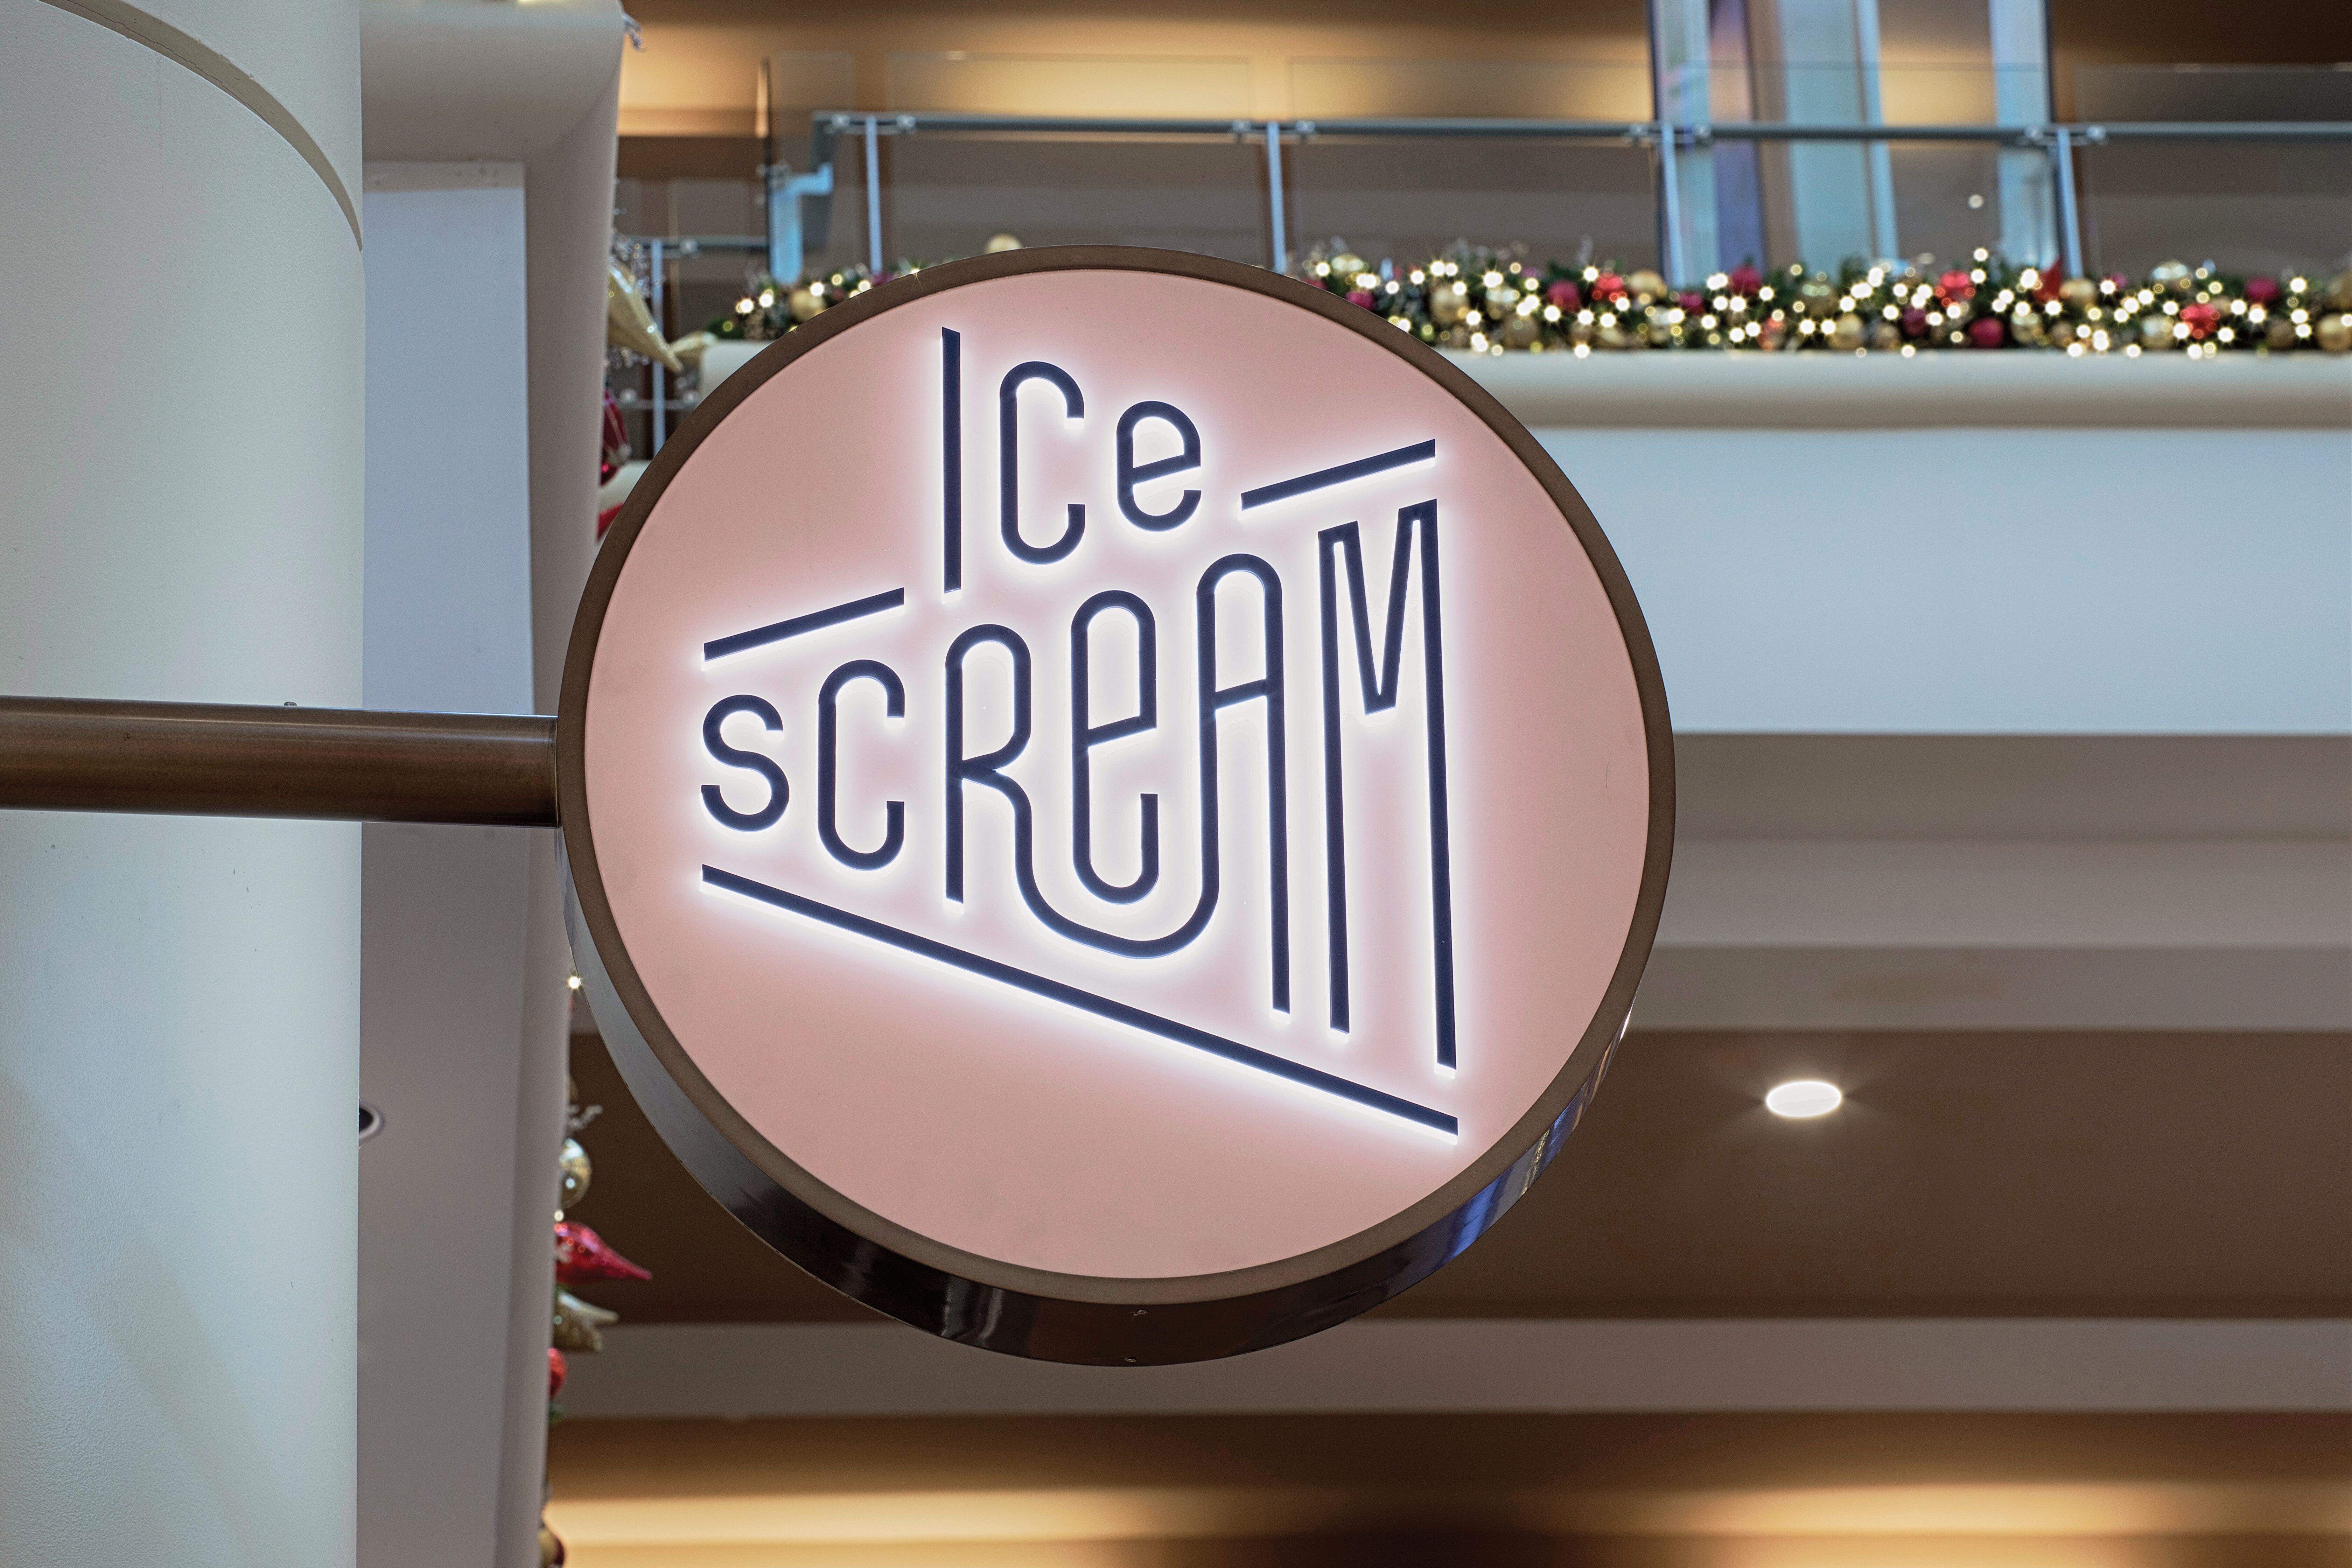 Ice Scream by Asthetíque